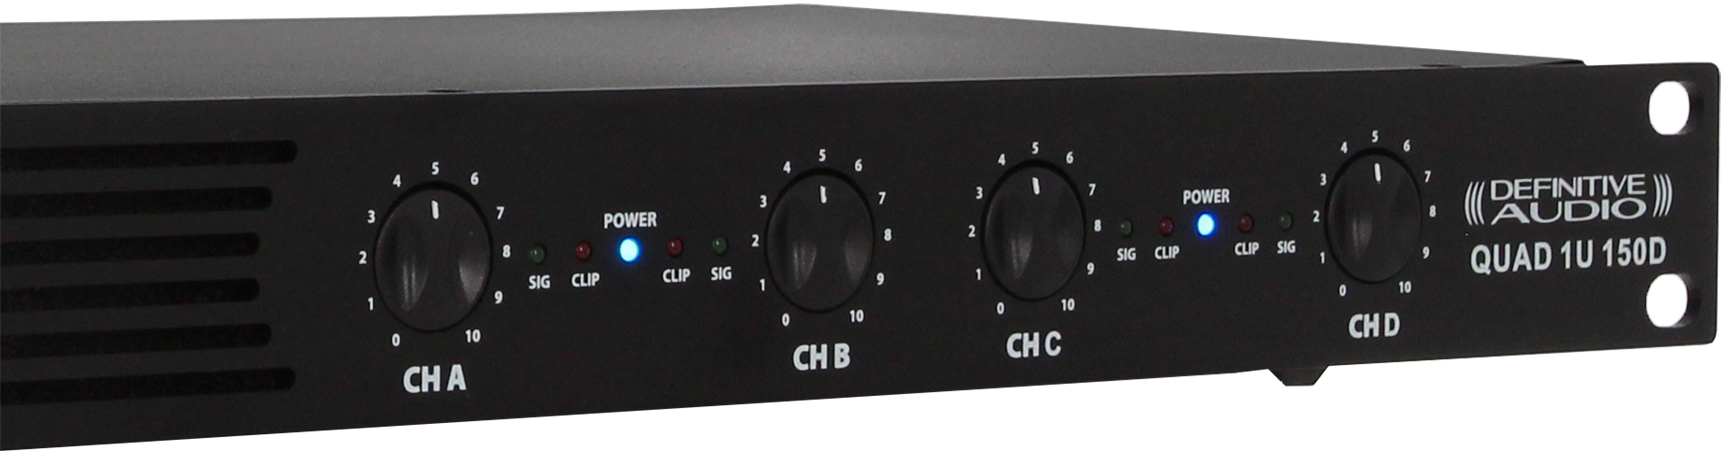 Definitive Audio Quad 1u 150d - Multiple channels power amplifier - Variation 3